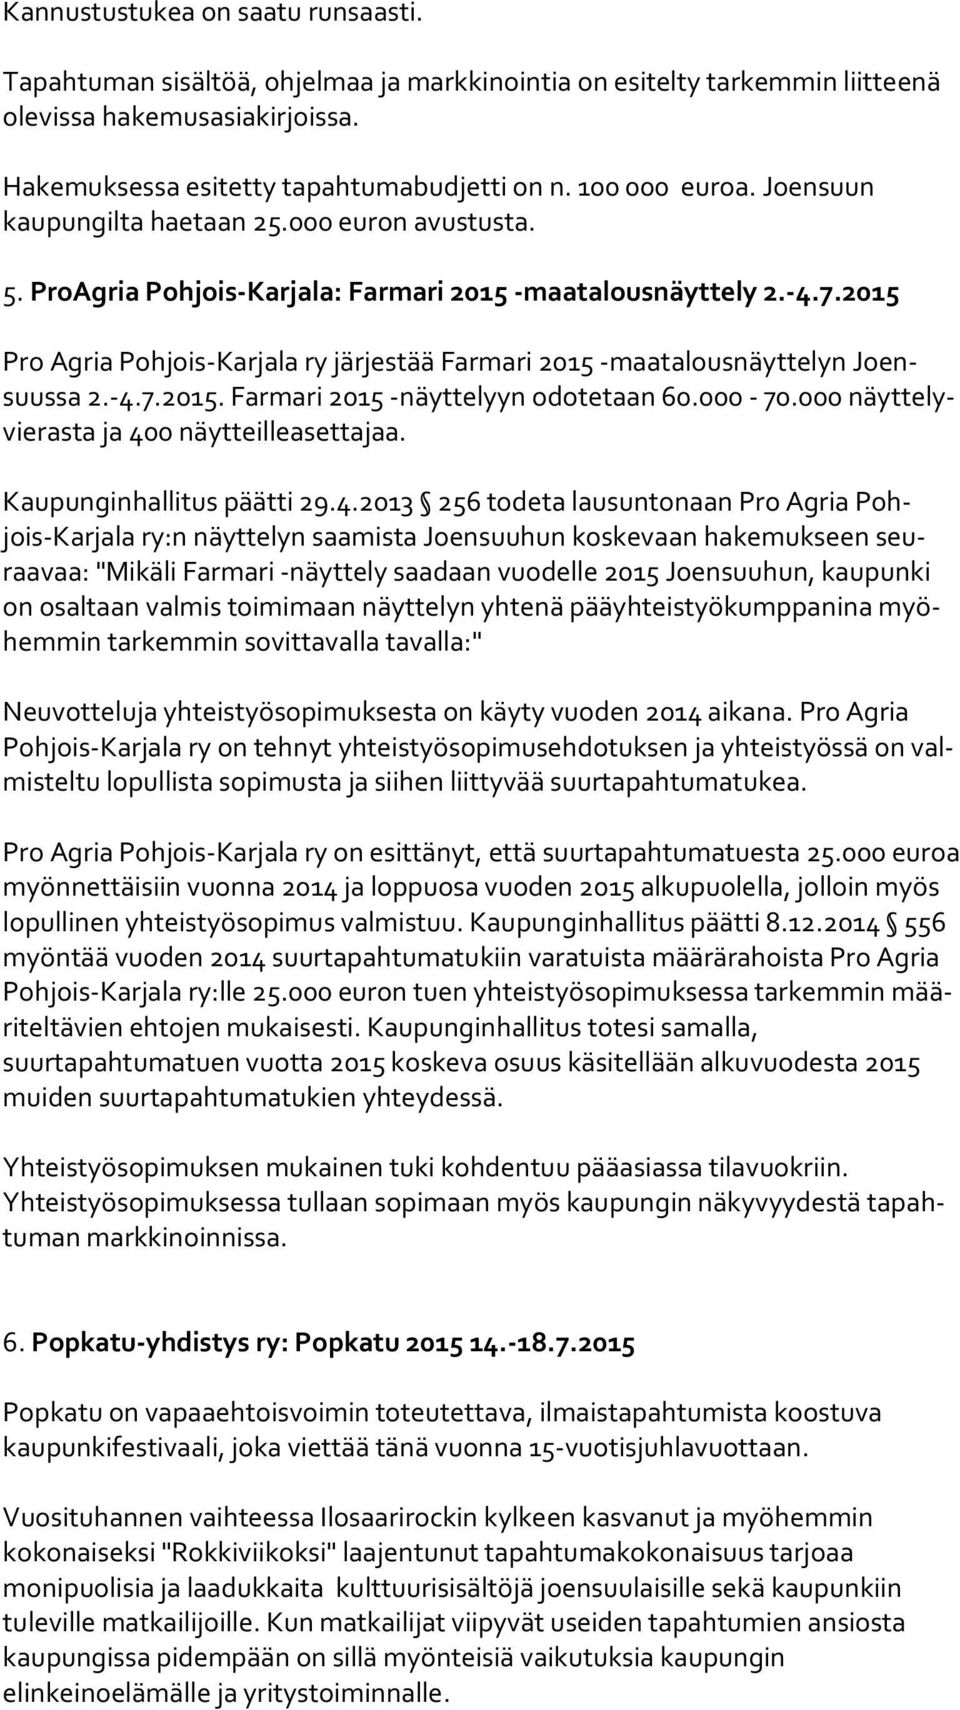 2015 Pro Agria Pohjois-Karjala ry järjestää Farmari 2015 -maatalousnäyttelyn Joensuus sa 2.-4.7.2015. Farmari 2015 -näyttelyyn odotetaan 60.000-70.000 näyt te lyvie ras ta ja 400 näytteilleasettajaa.